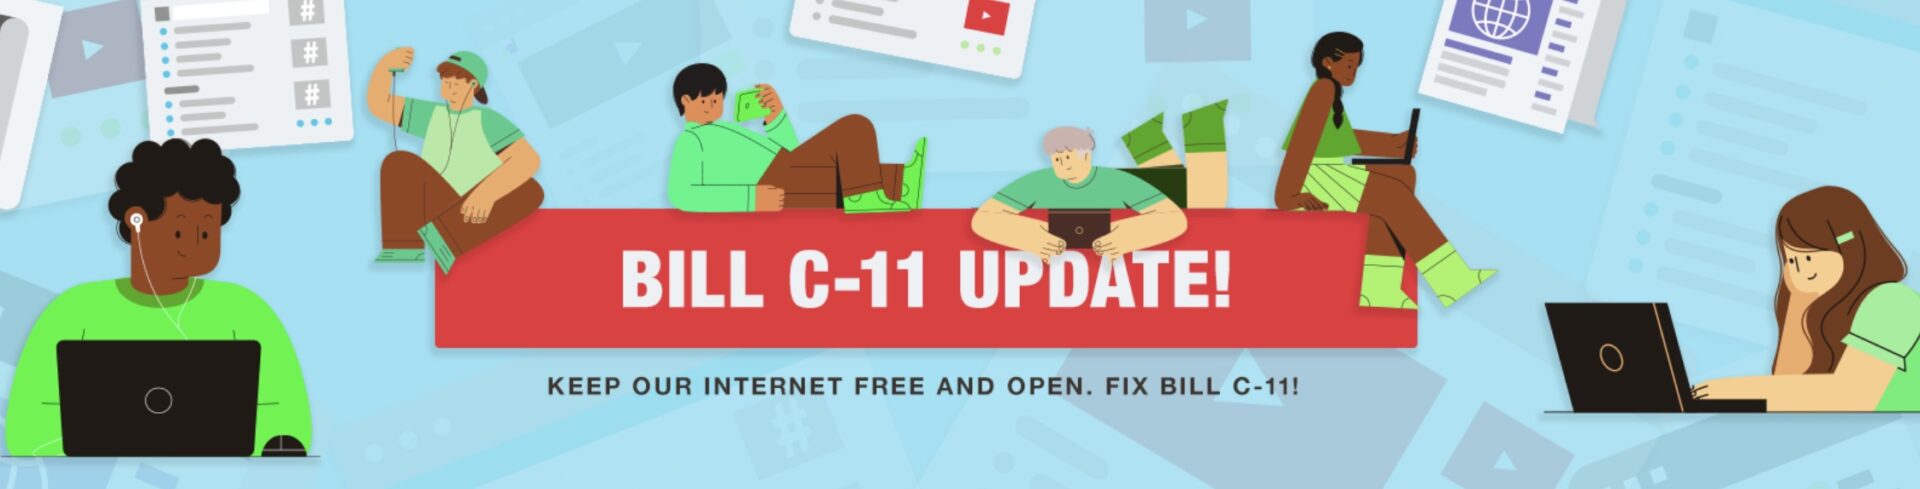 bill c-11 update openmedia